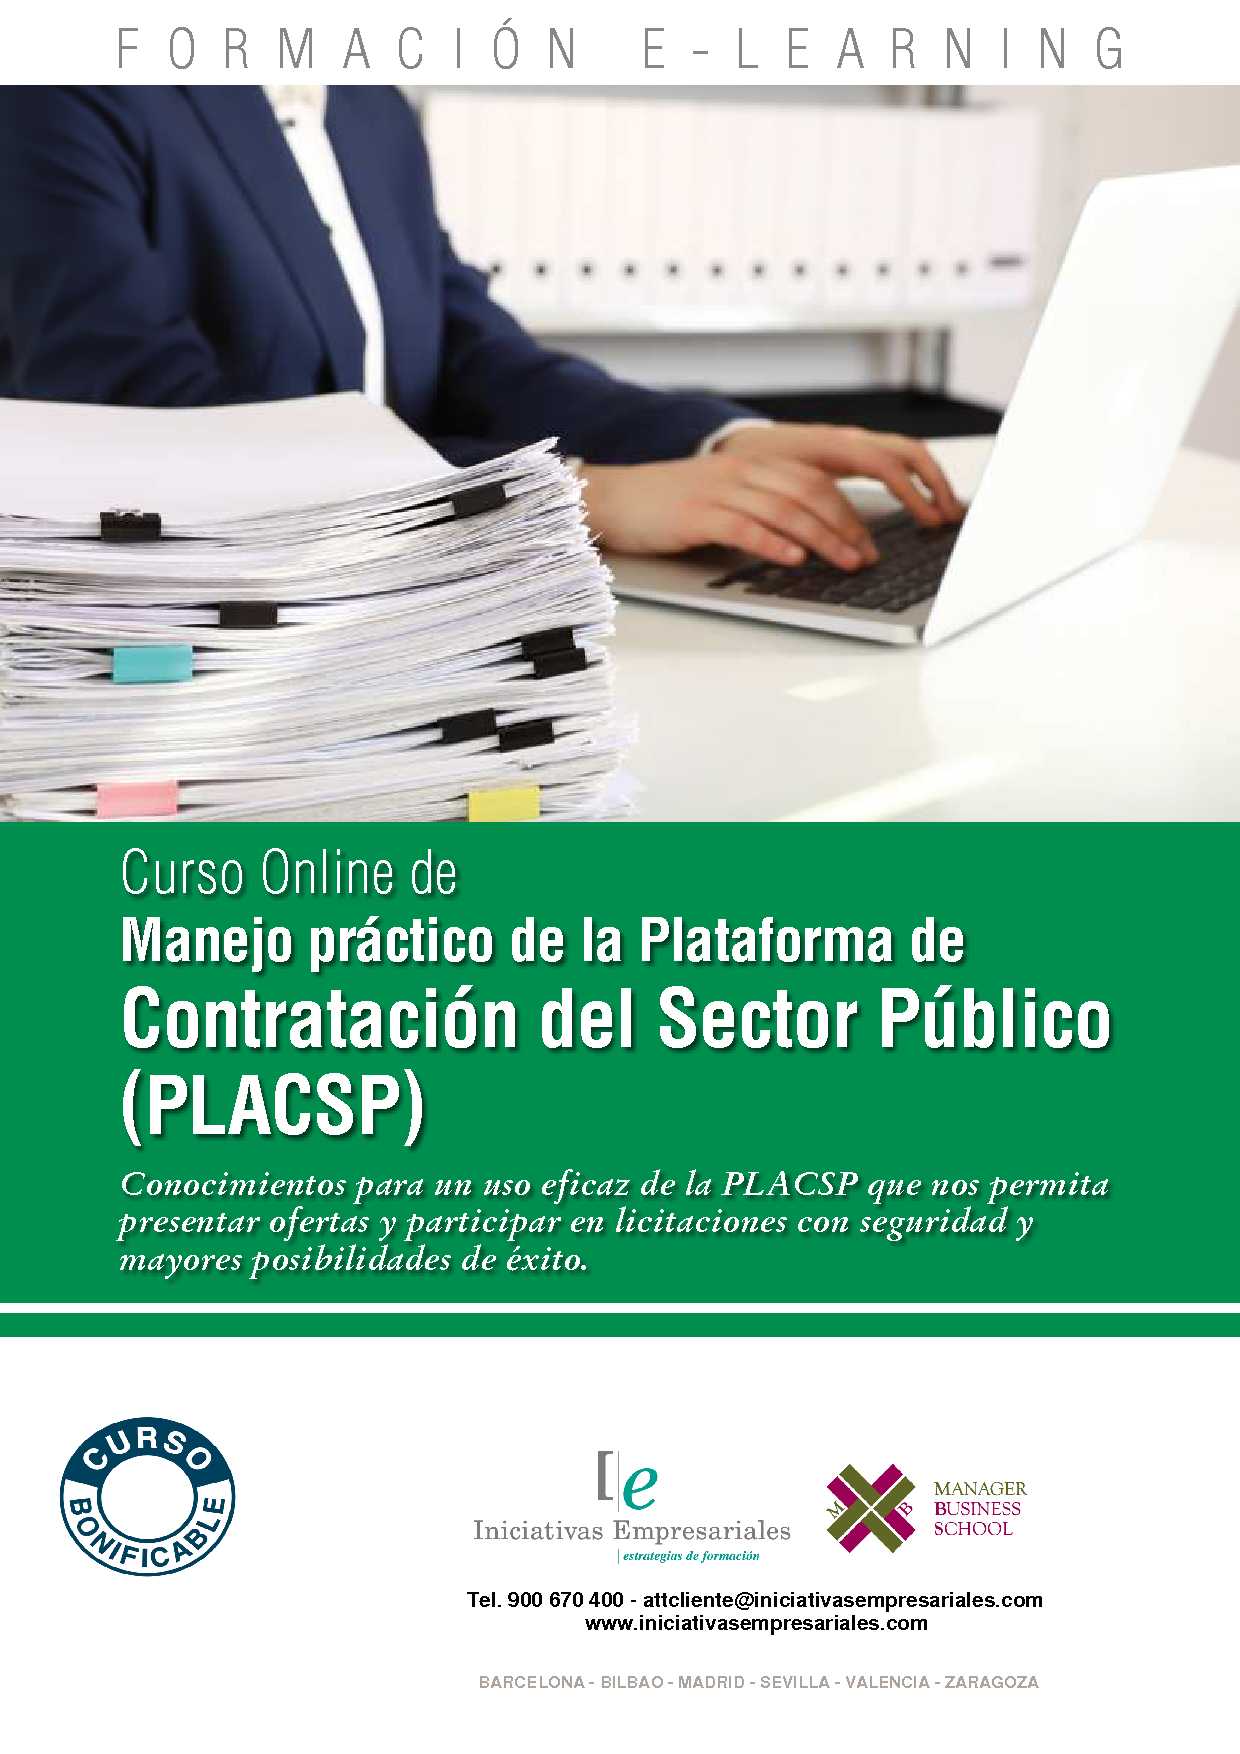 Manejo práctico de la Plataforma de Contratación del Sector Público (PLACSP)